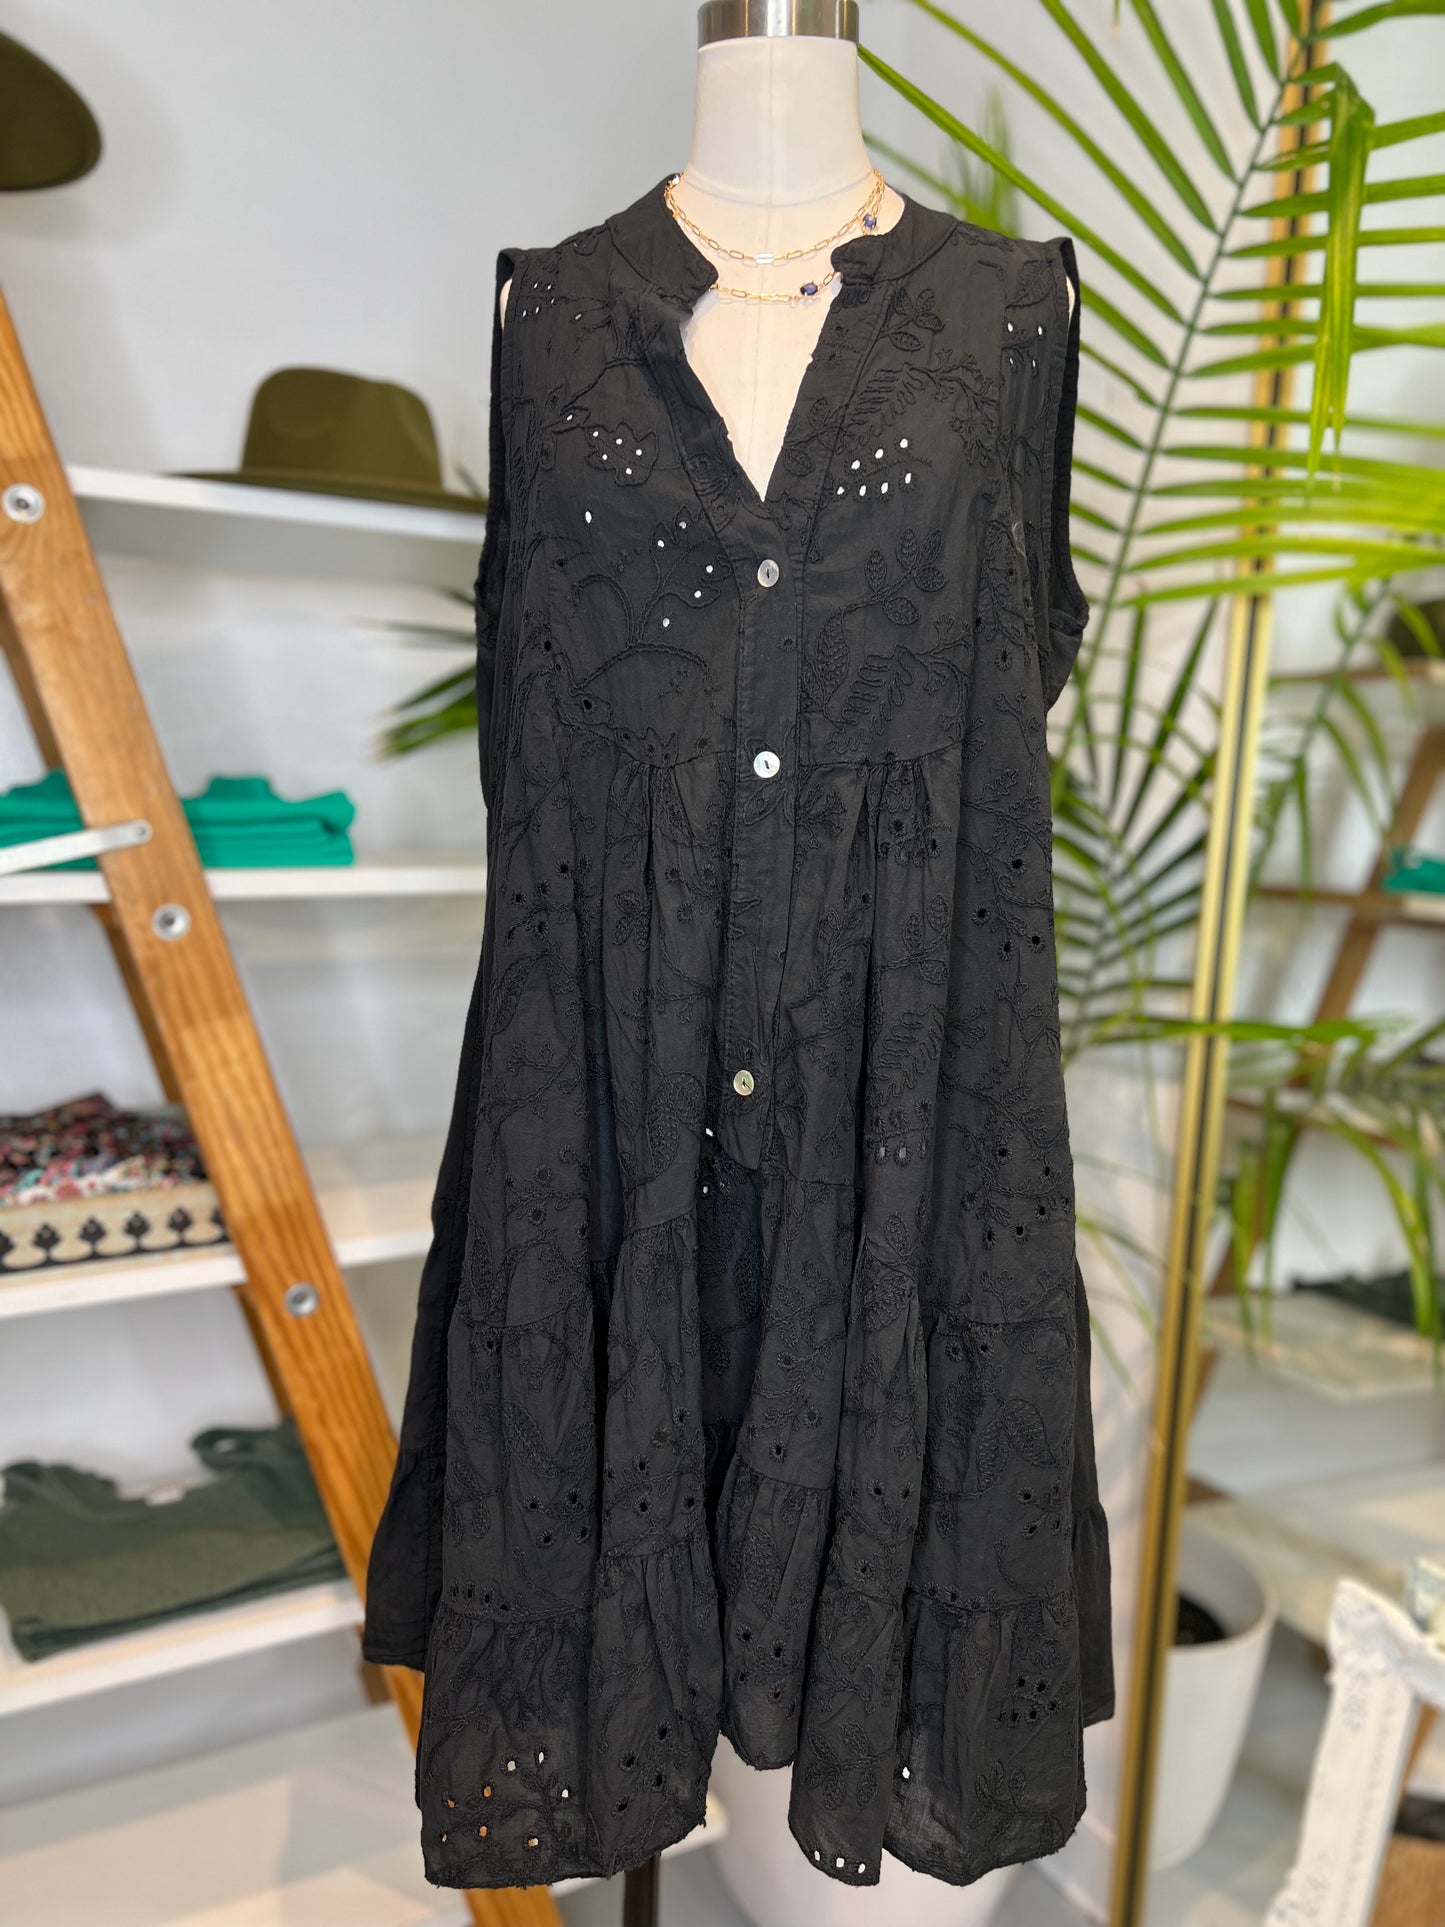 Bethany Black 100% Cotton Dress (OneSize)